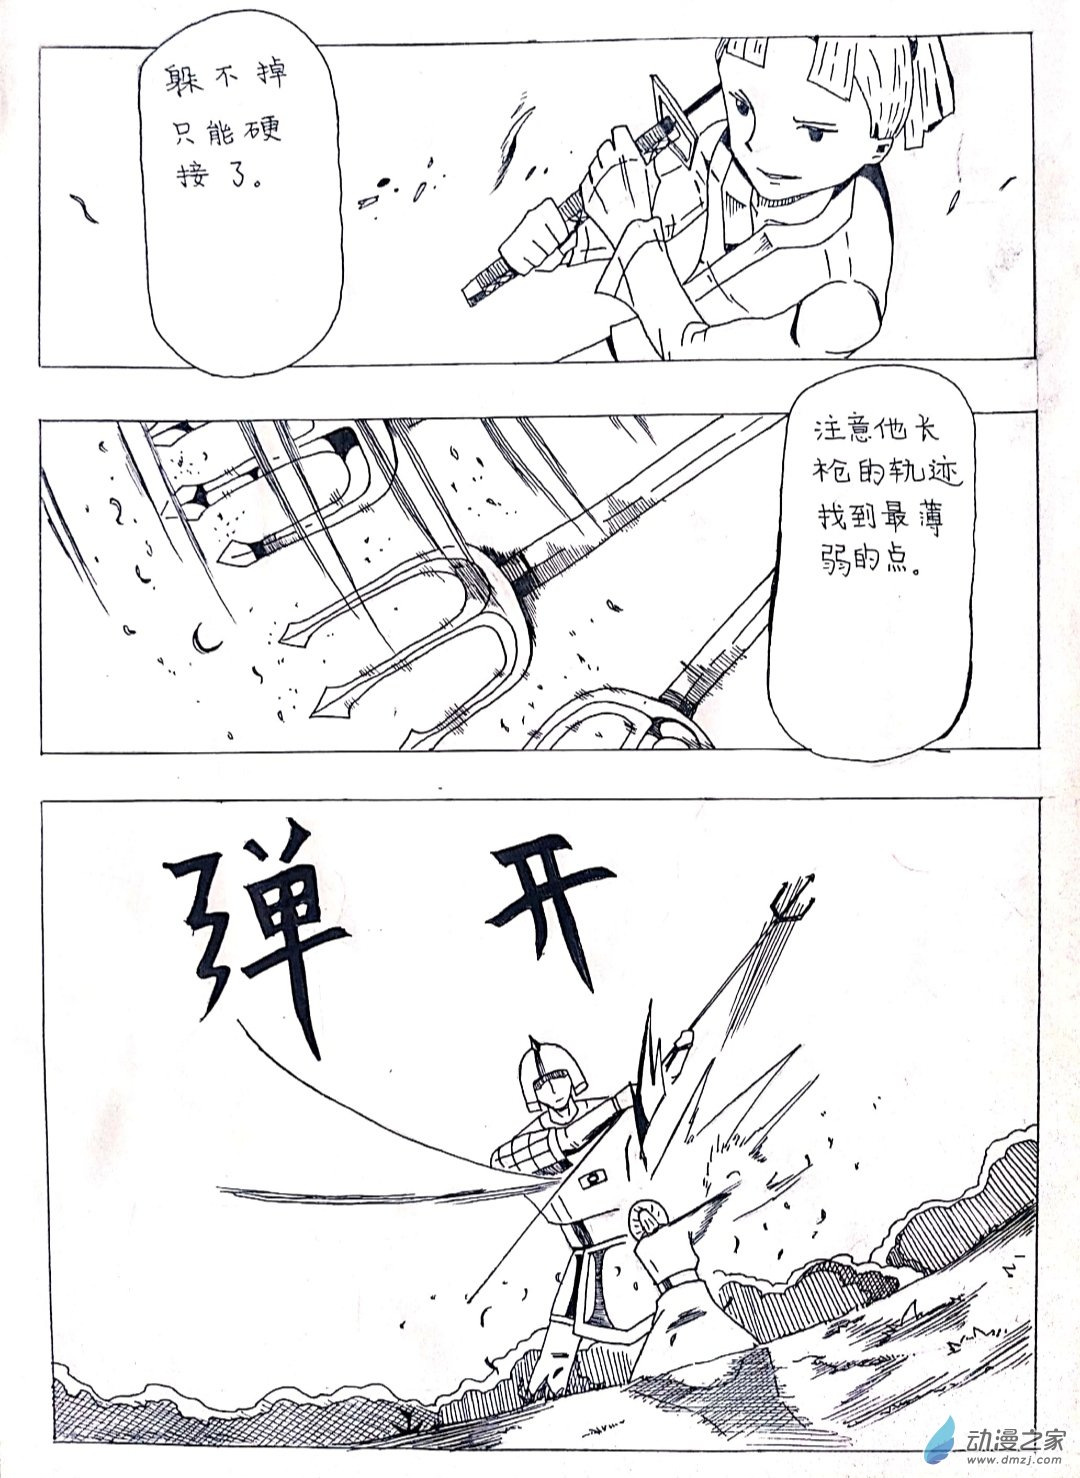 日刊漫畫 - 23 劍客的故事 - 1